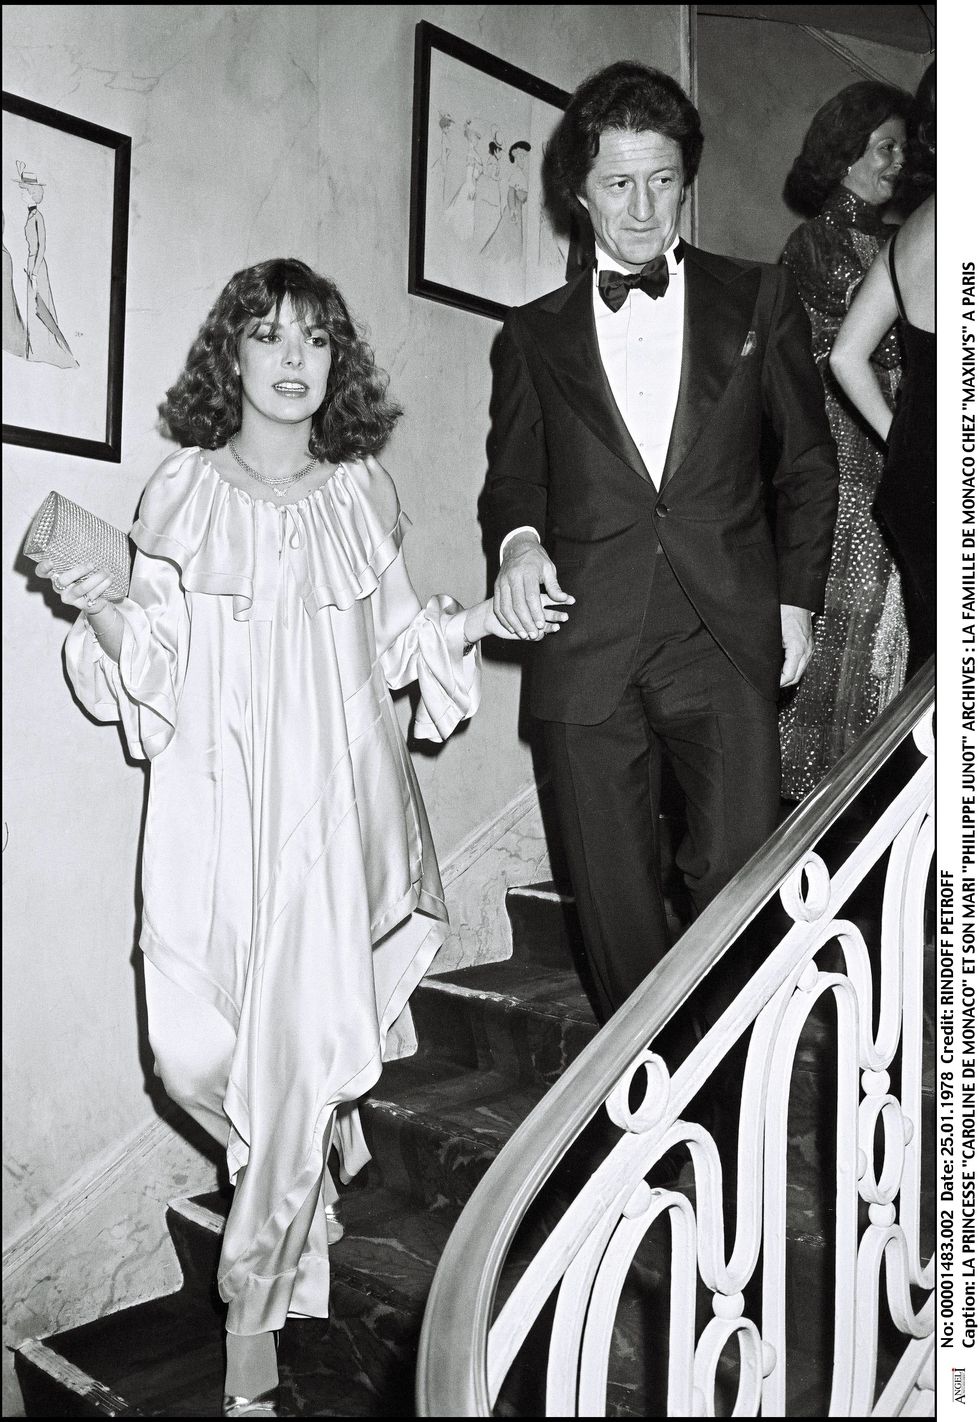 Monaco Royals At Maxim's Party In 1978